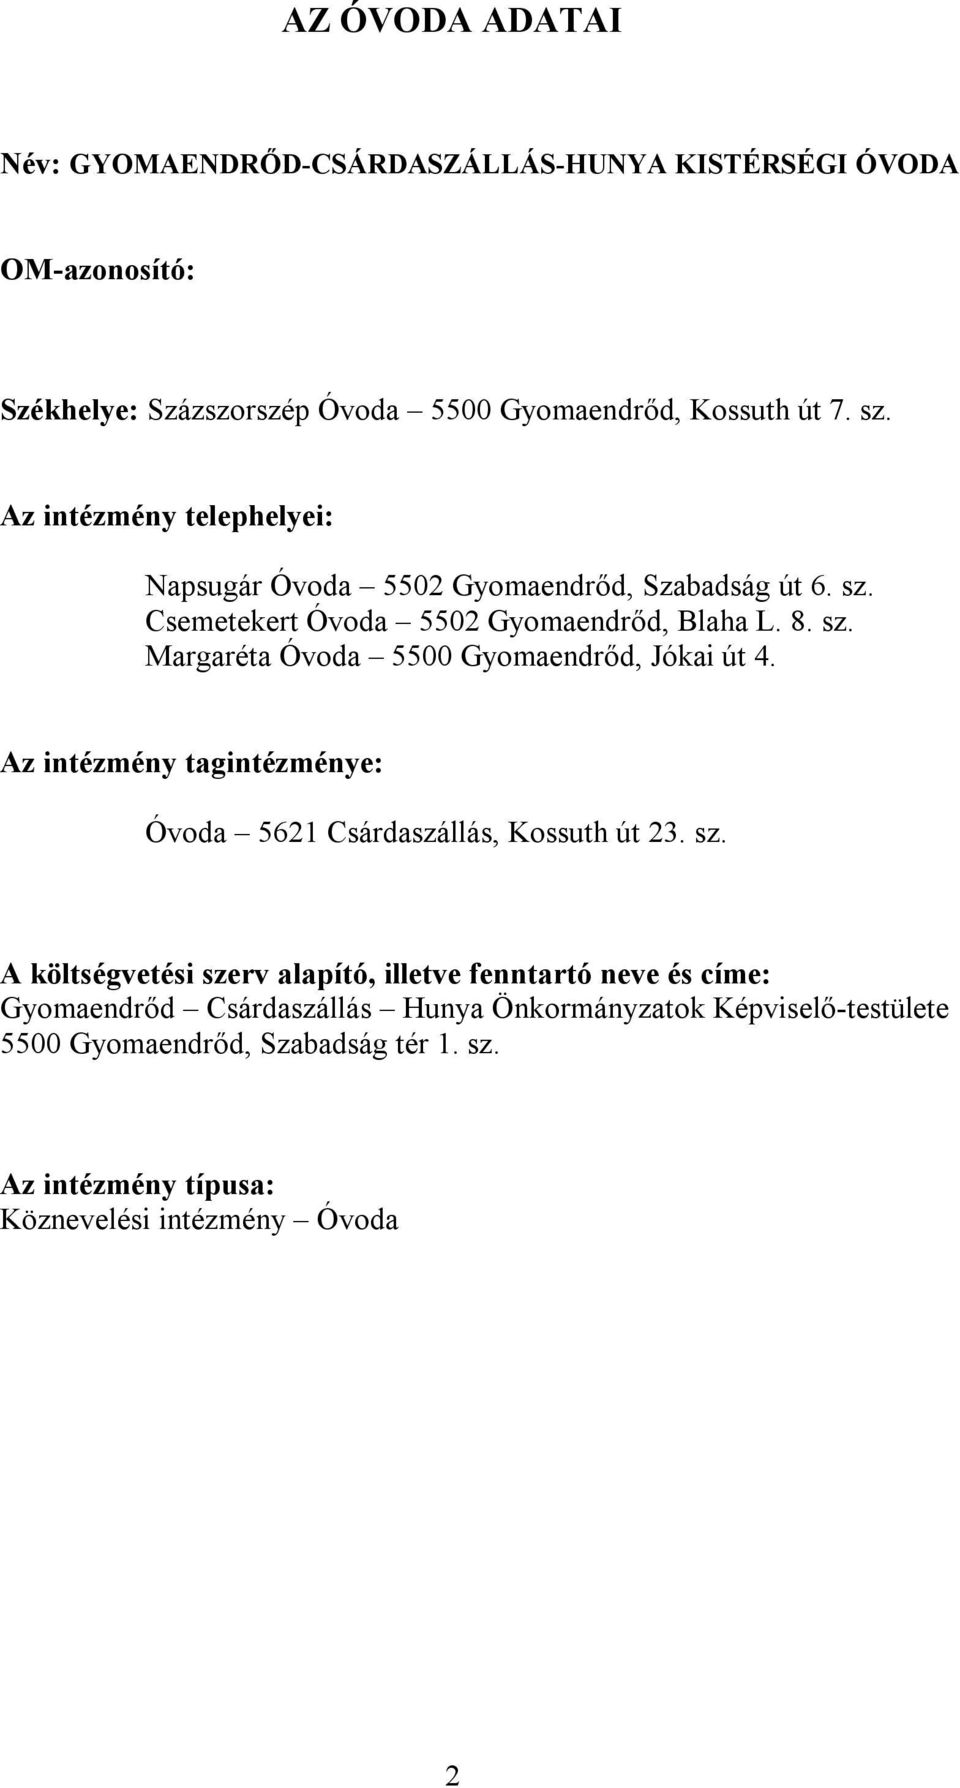 Az intézmény tagintézménye: Óvoda 5621 Csárdaszállás, Kossuth út 23. sz.